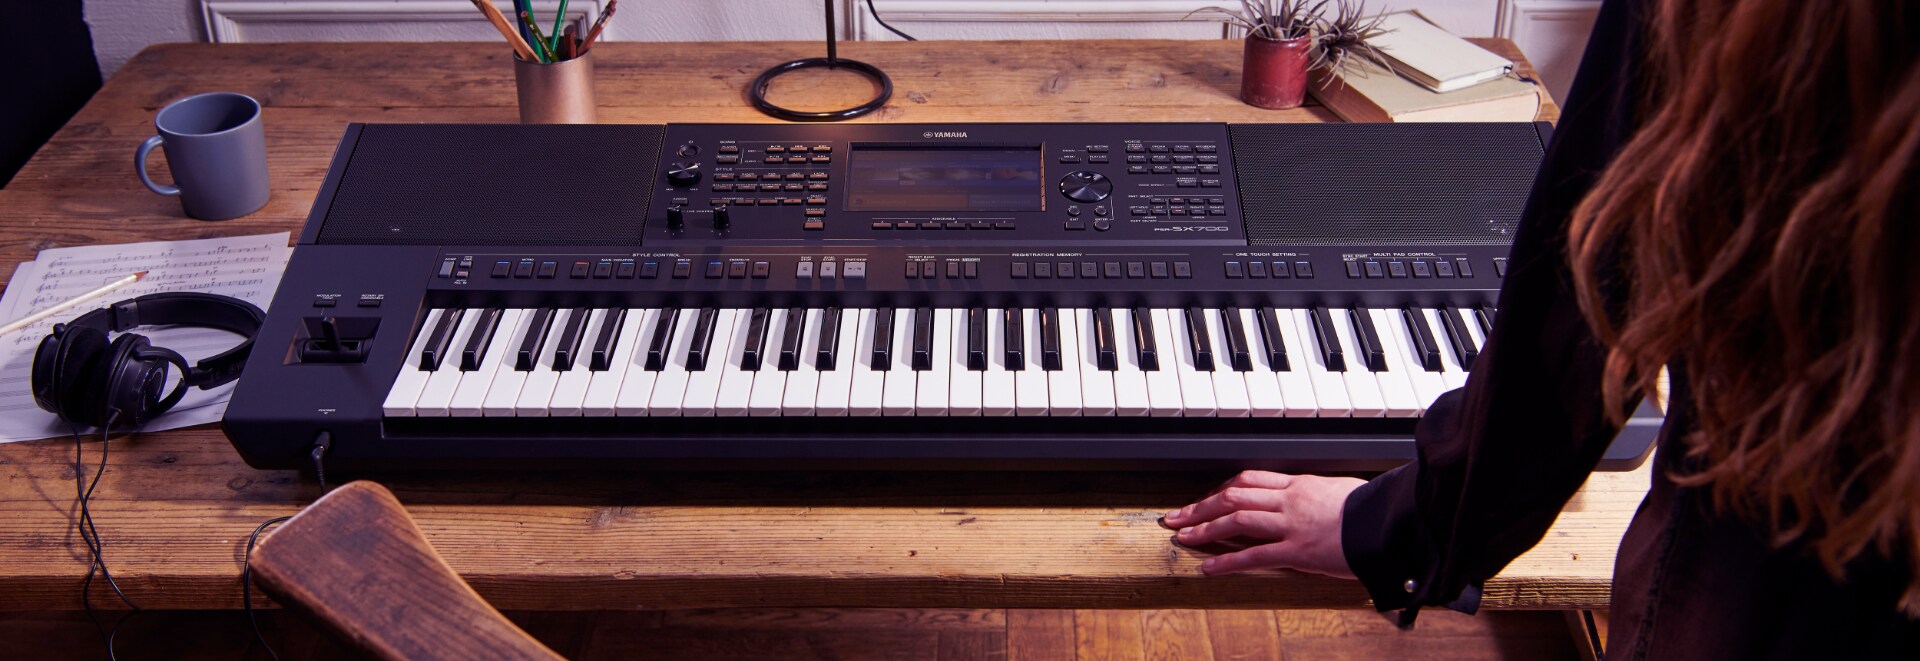 Yamaha Keyboard PSR PSR-SX900 PSR-SX700 #12